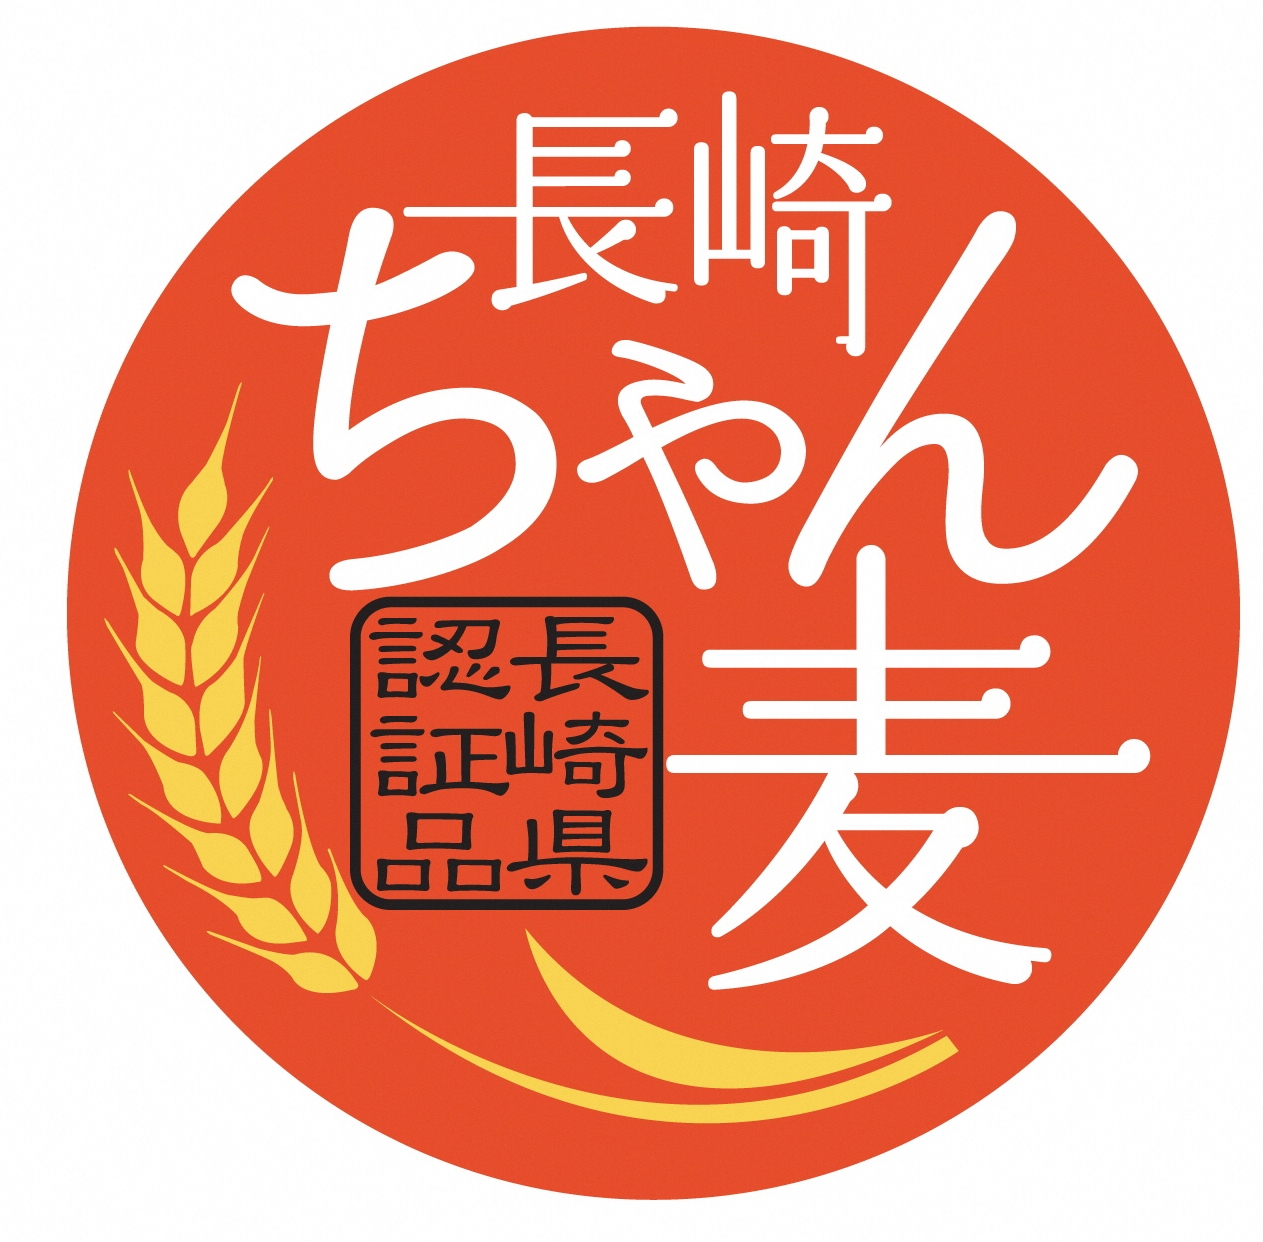 「長崎Ｗ２号」は、長崎ちゃんぽん麺用として本県で育成した硬質小麦の早生品種、手延べそうめんに初認証